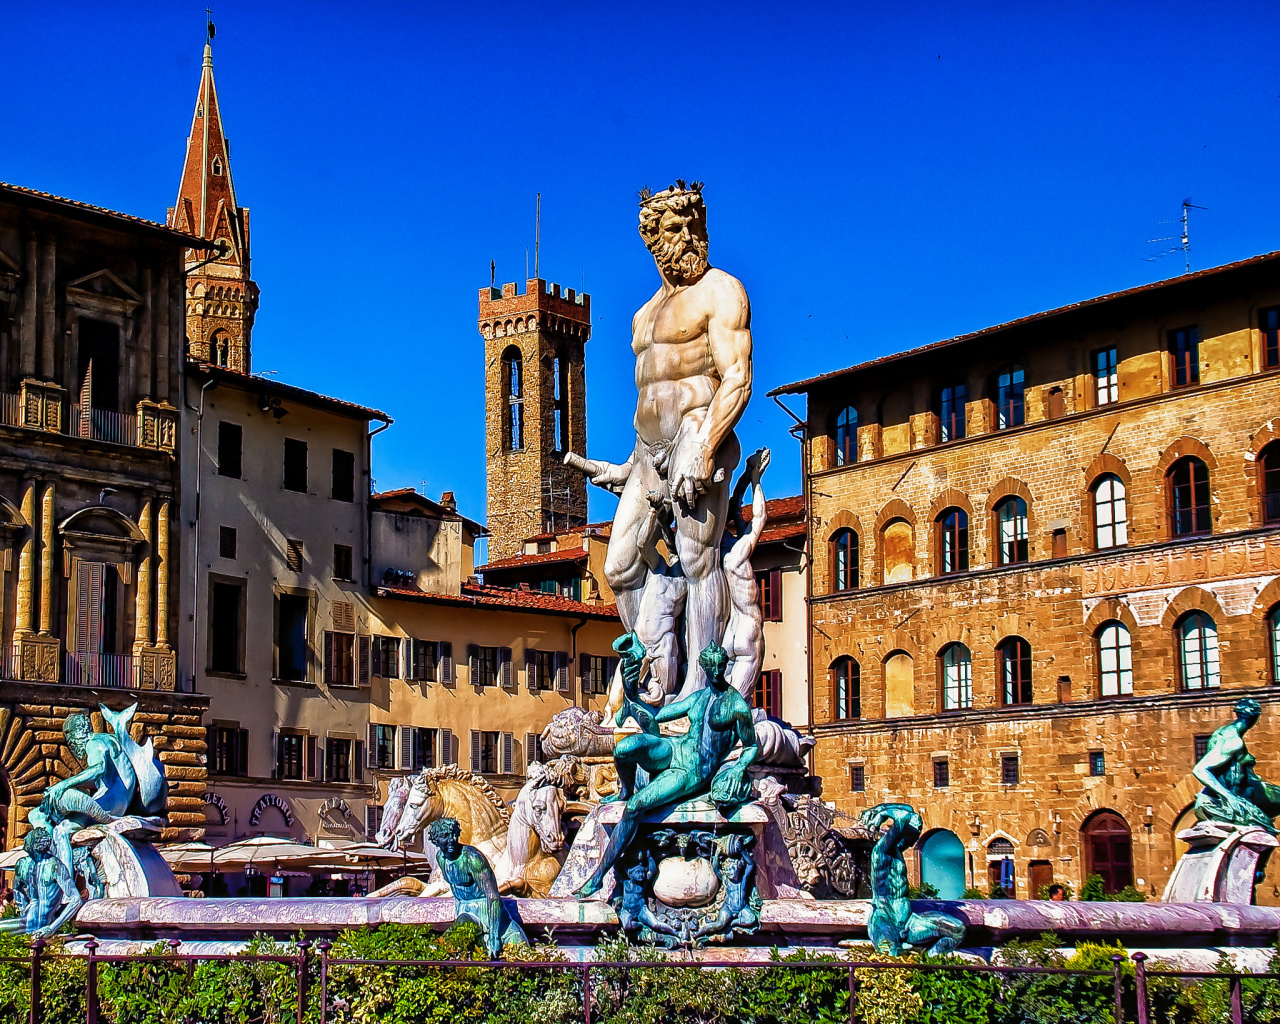 Фонтан Нептуна на площади Синьории, Италия. Флоренция  